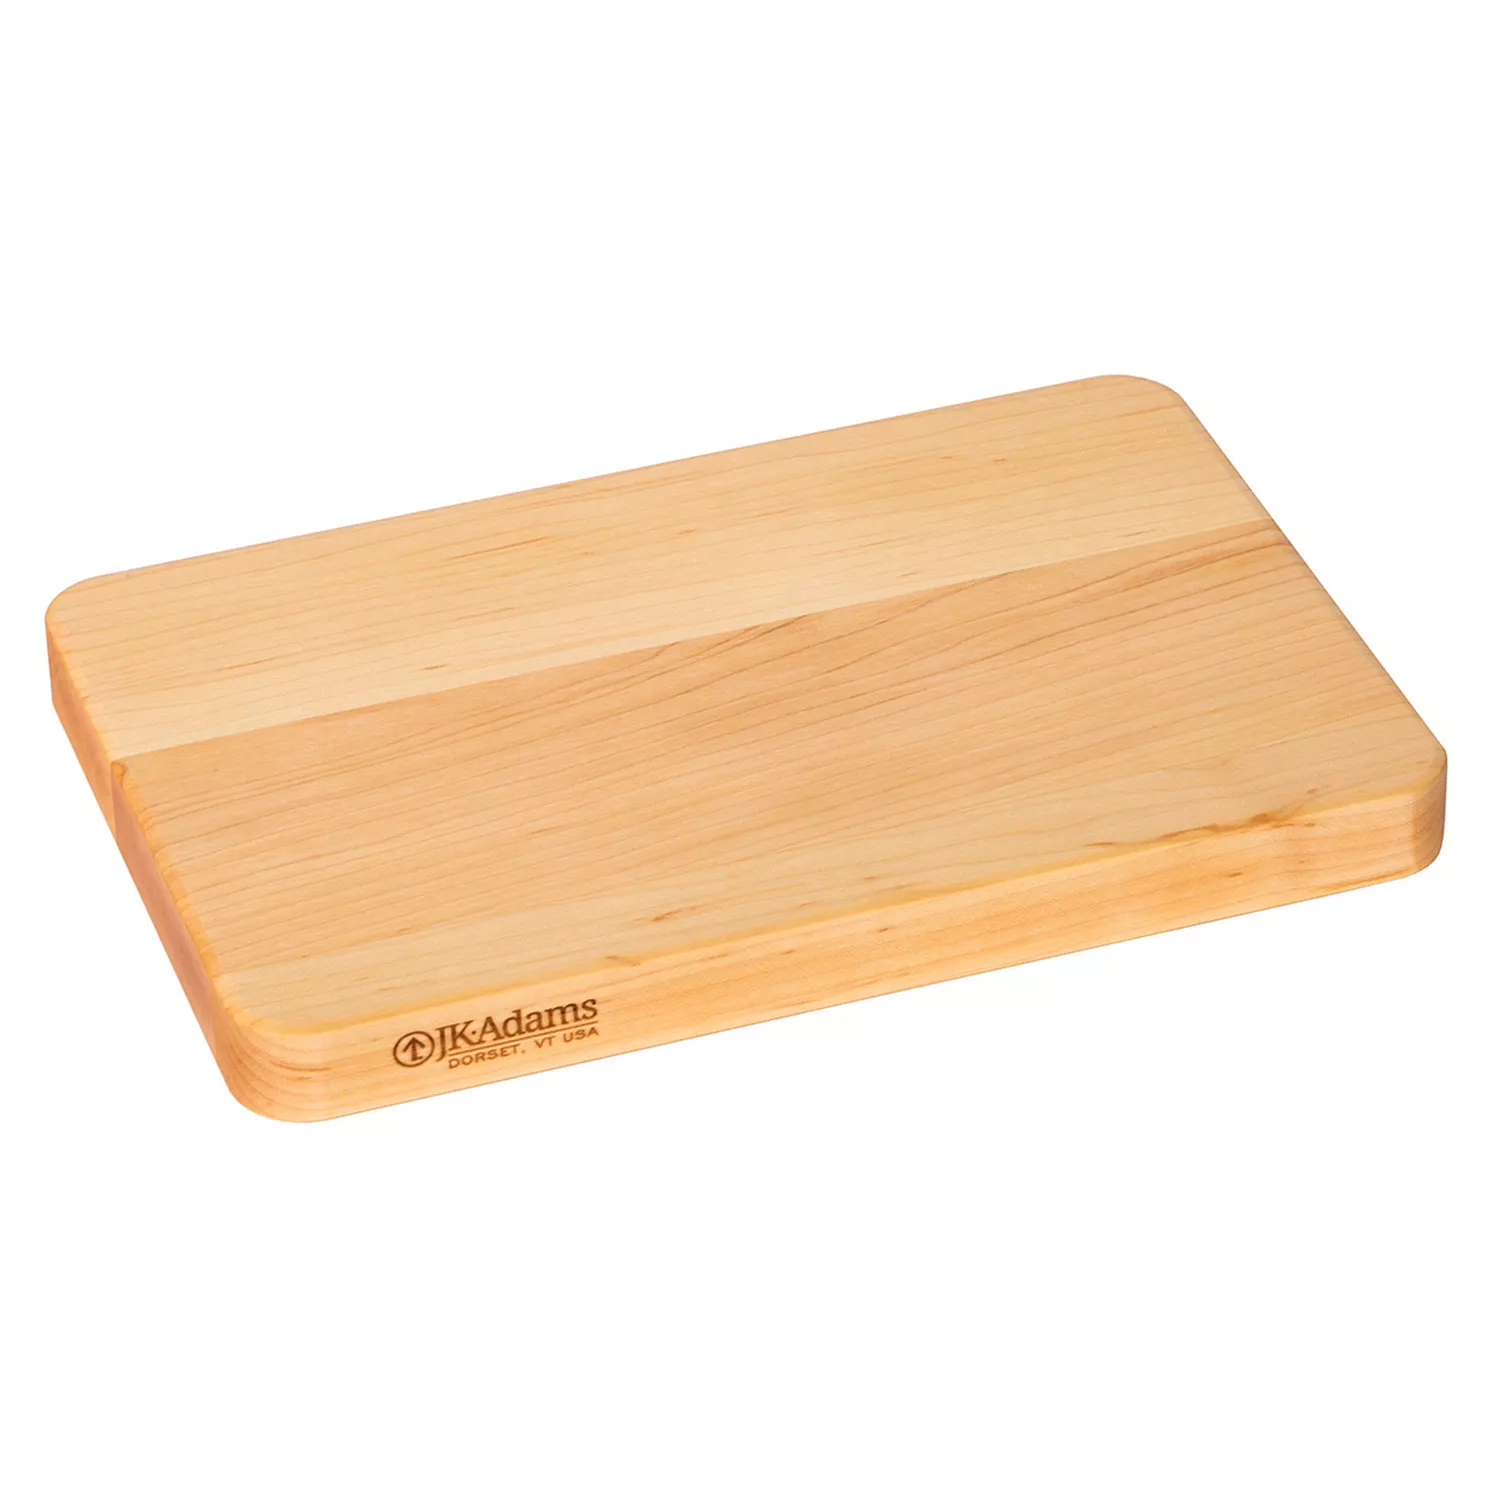 KitchenAid Classic Wood Cutting Board | 11 x 14